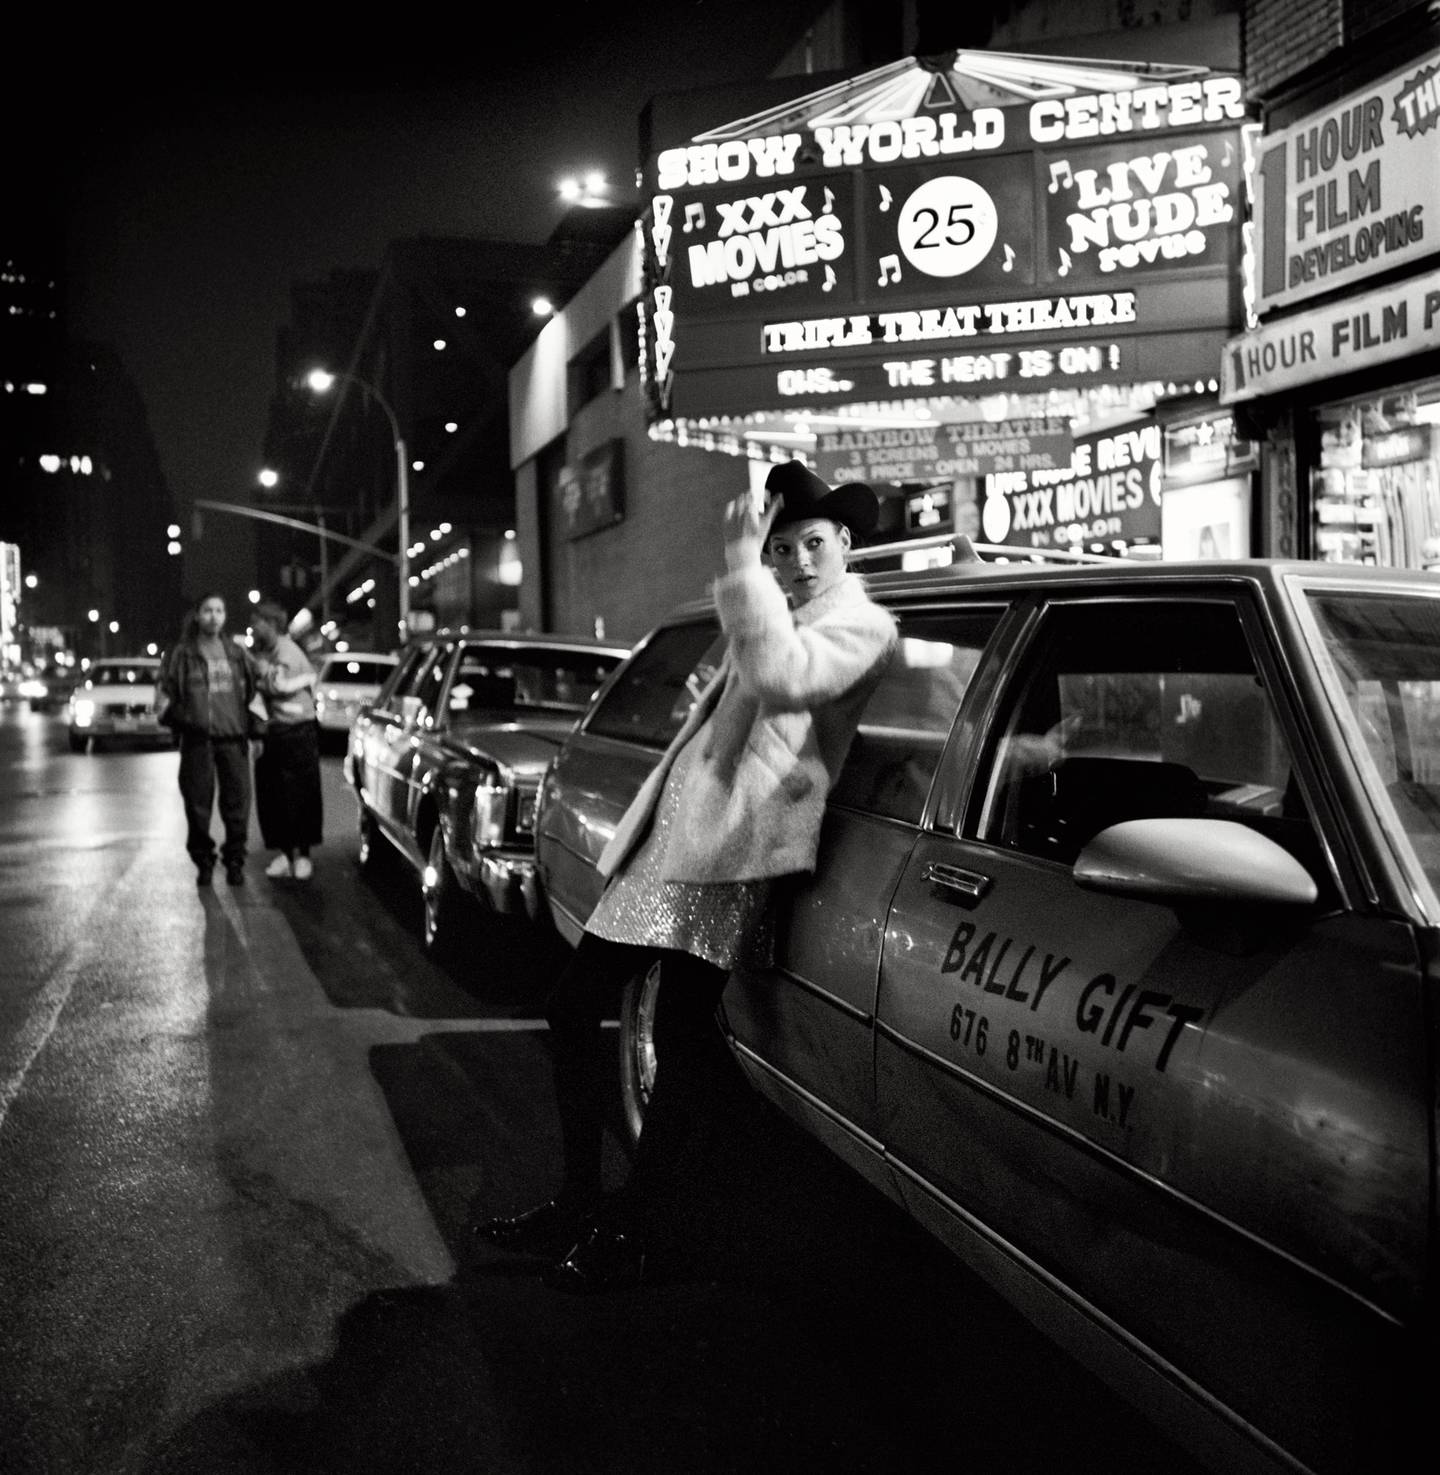 Var inspirert av filmen Taxi driver - Glen Ruchfords bilder av Kate Moss er like mye et portrett av en by som av mote.